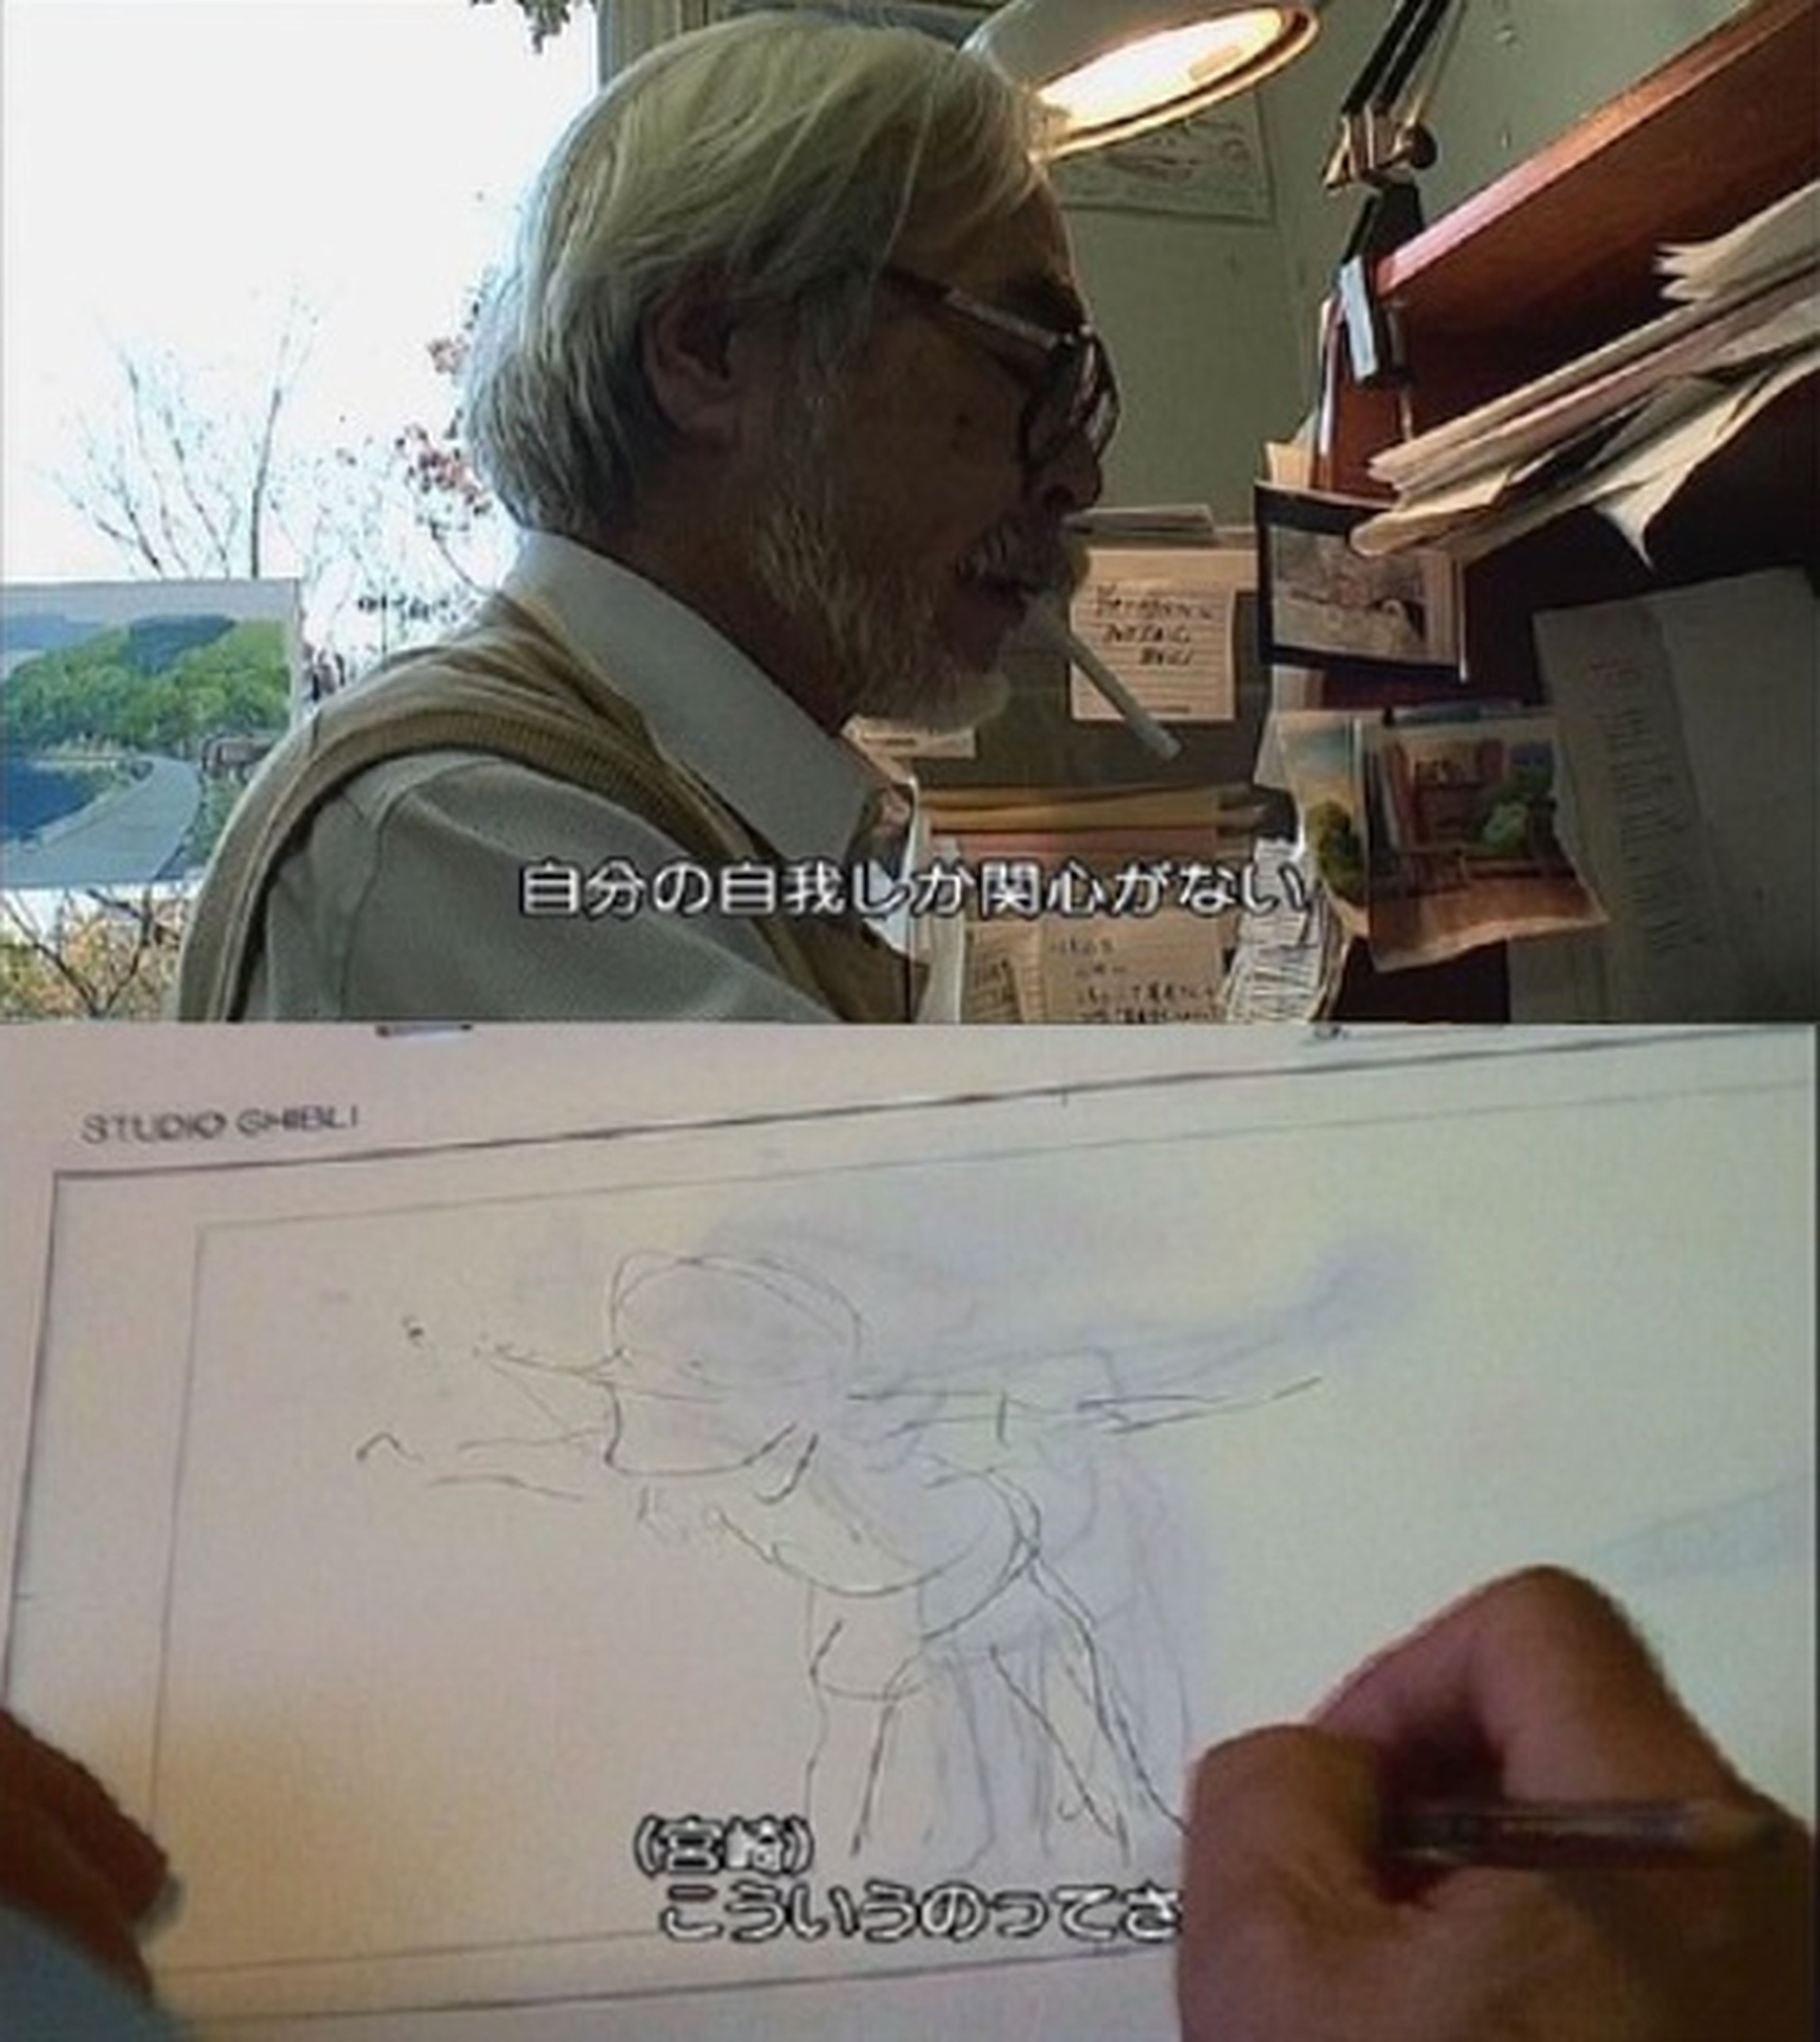 Miyazaki habla sobre la industria del anime